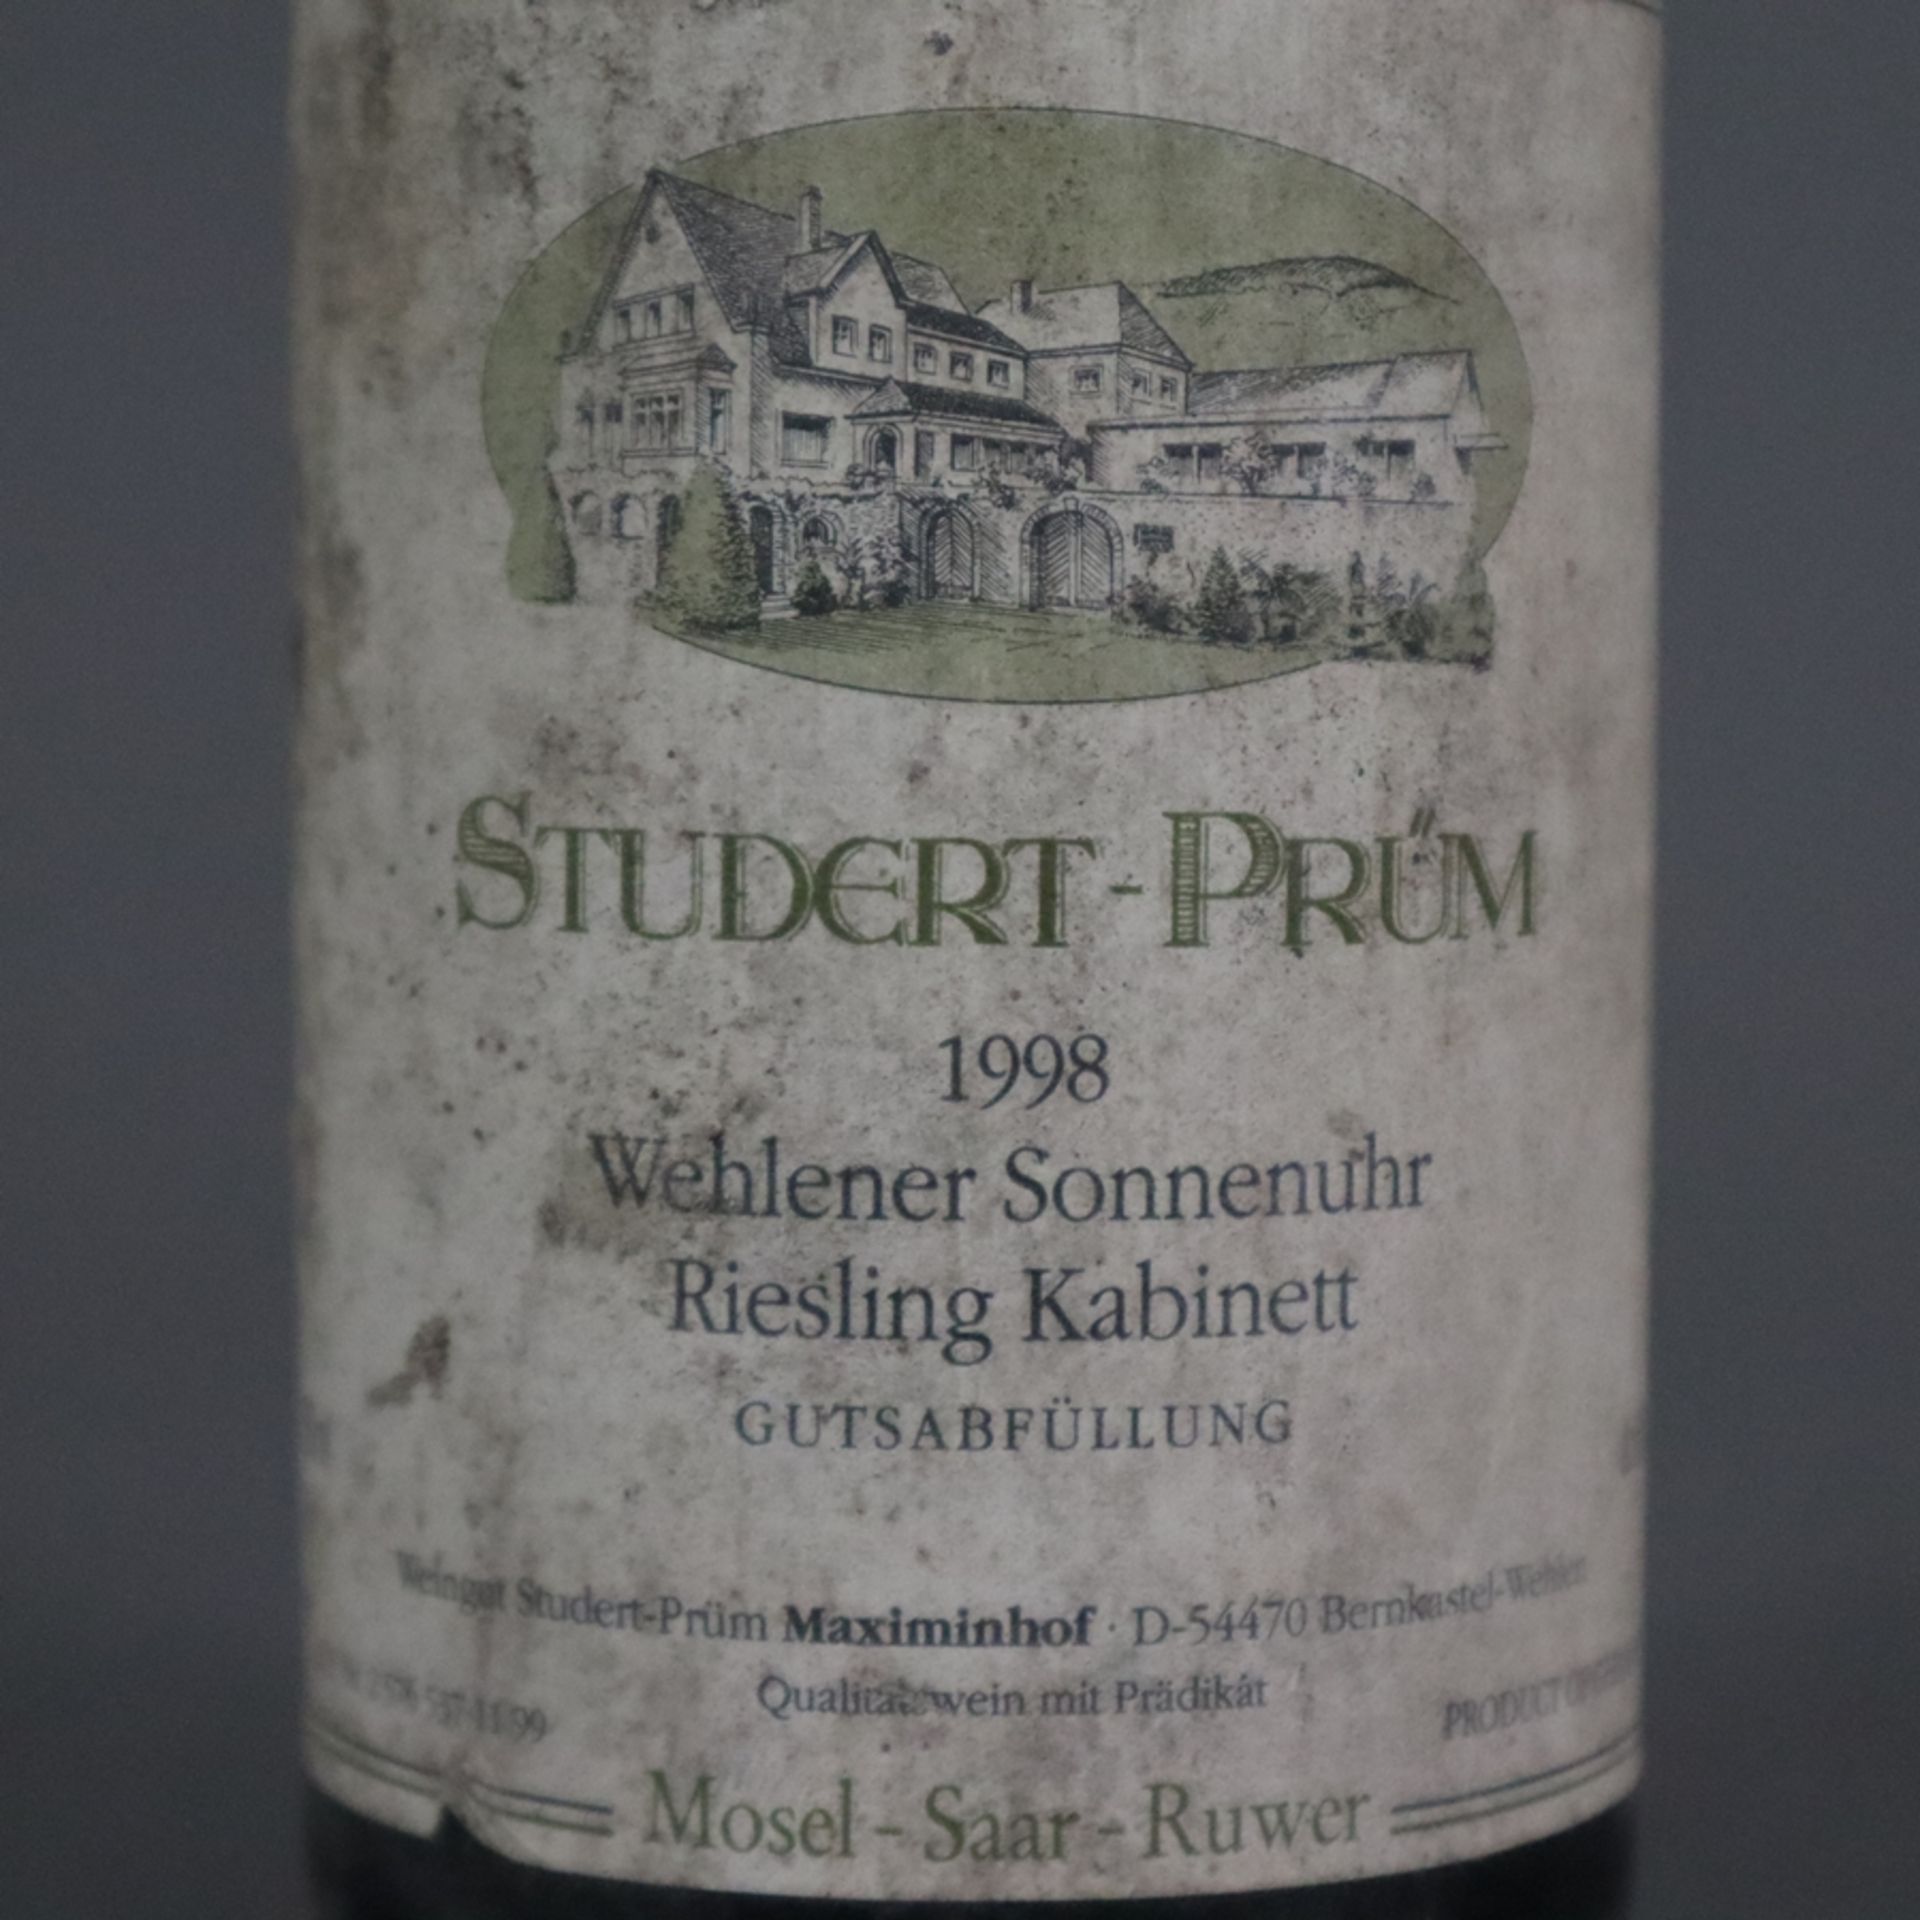 Wein - 1998 Wehlener Sonnenuhr Riesling Kabinett, Füllstand: Into Neck, Flasche und Etikett verschm - Bild 4 aus 6